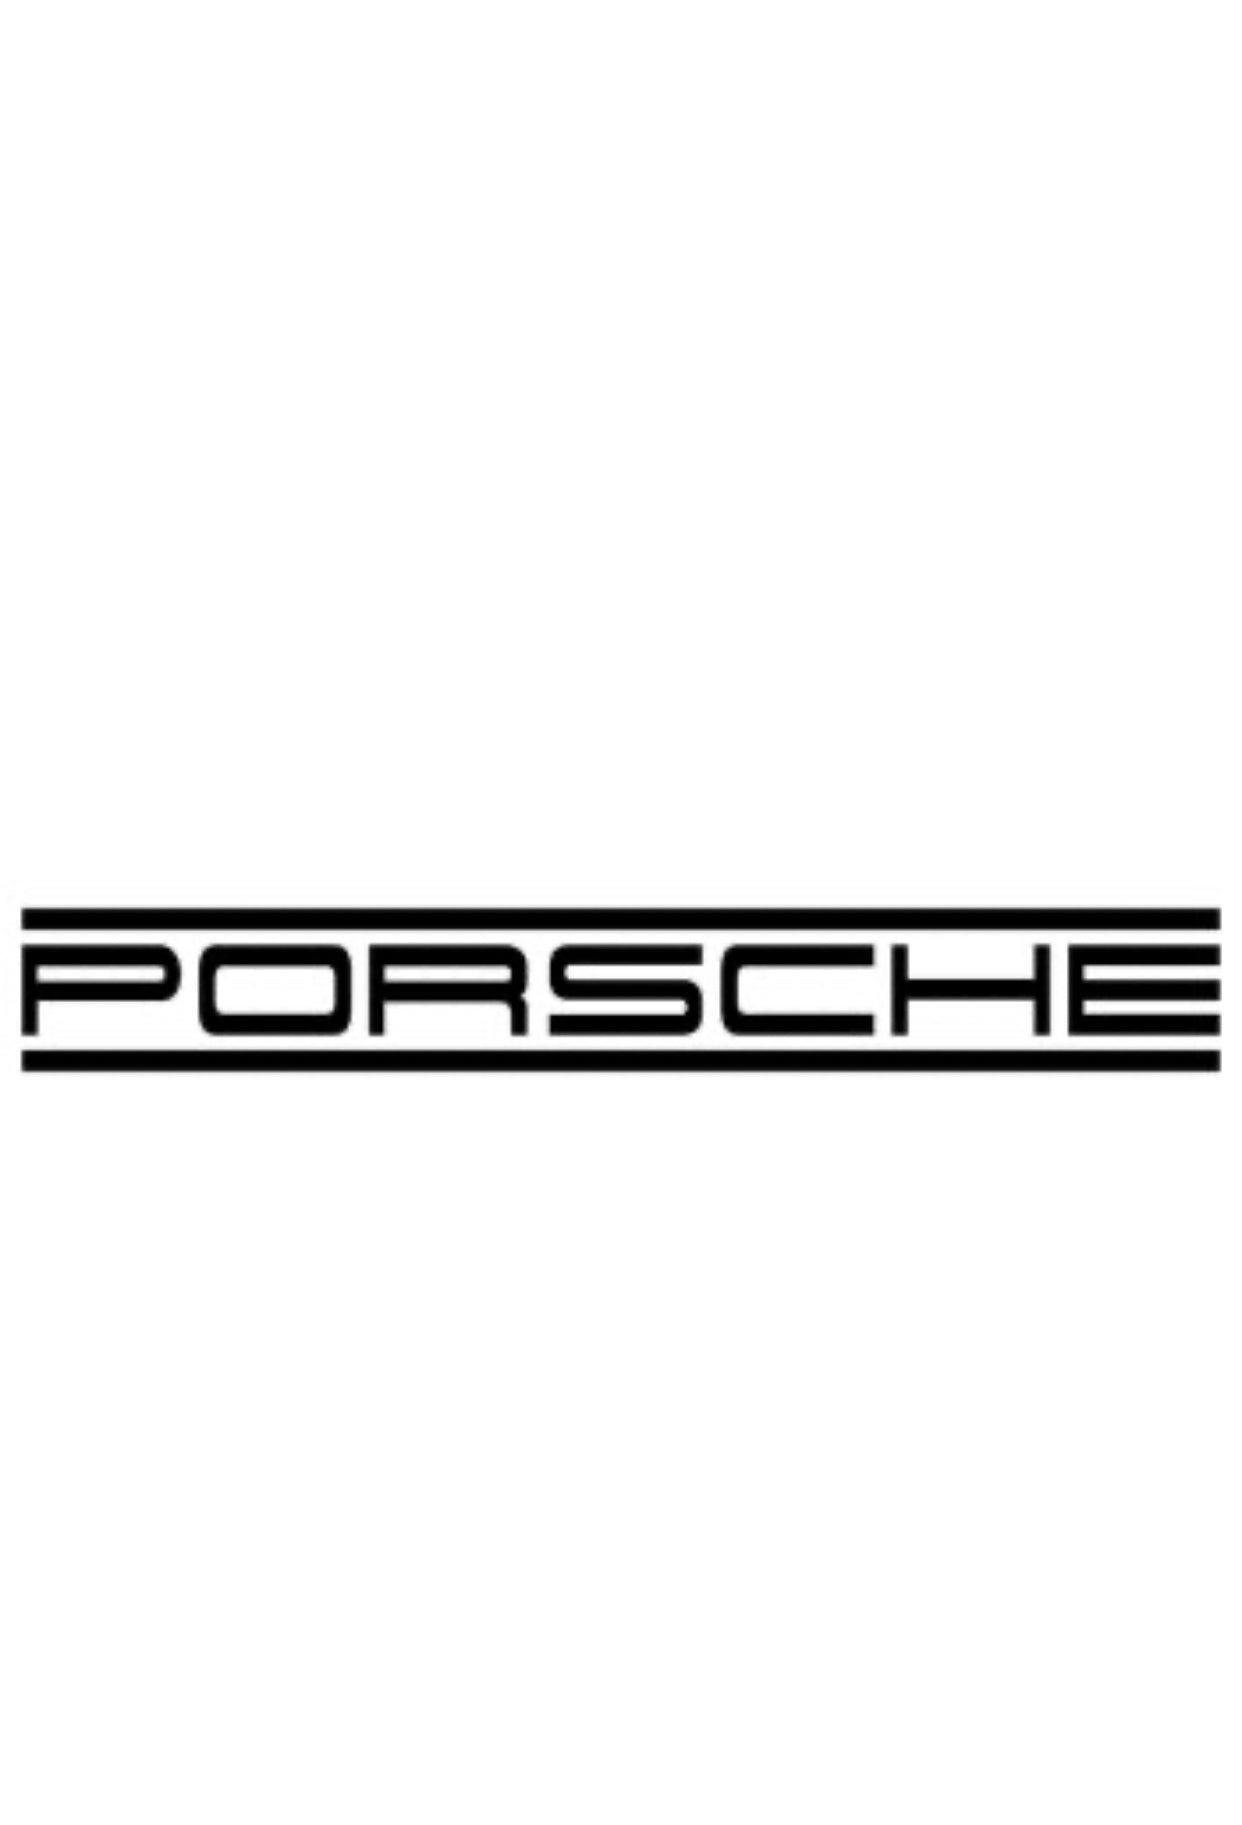 Porsche Macan 95B Luftfahrwerk tieferlegen